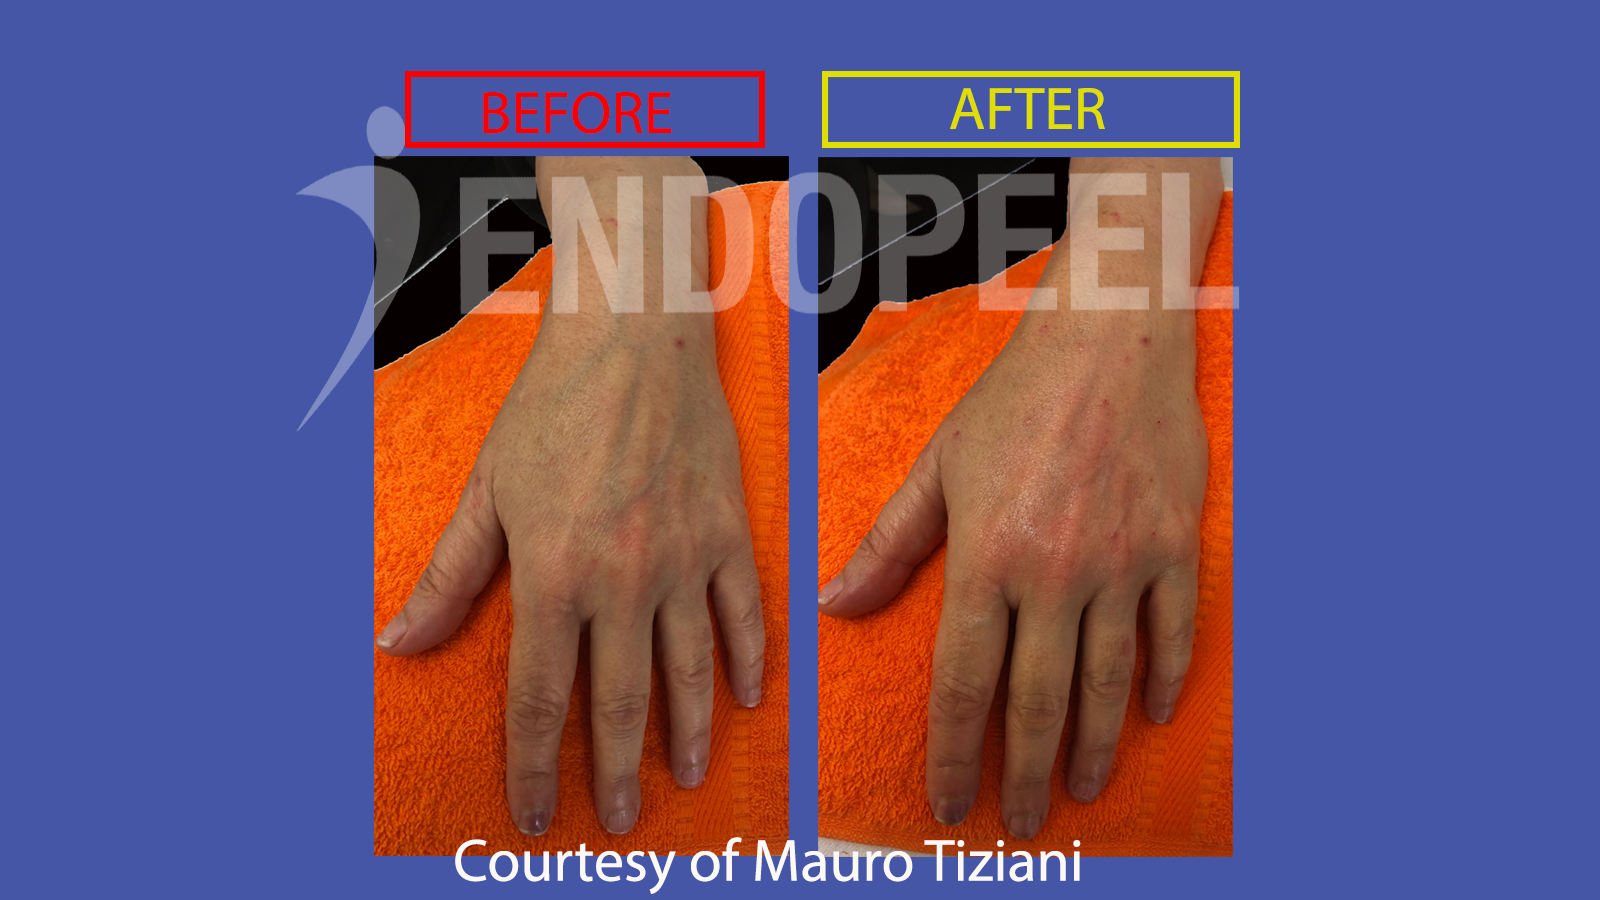 hands endopeel rejuvenation